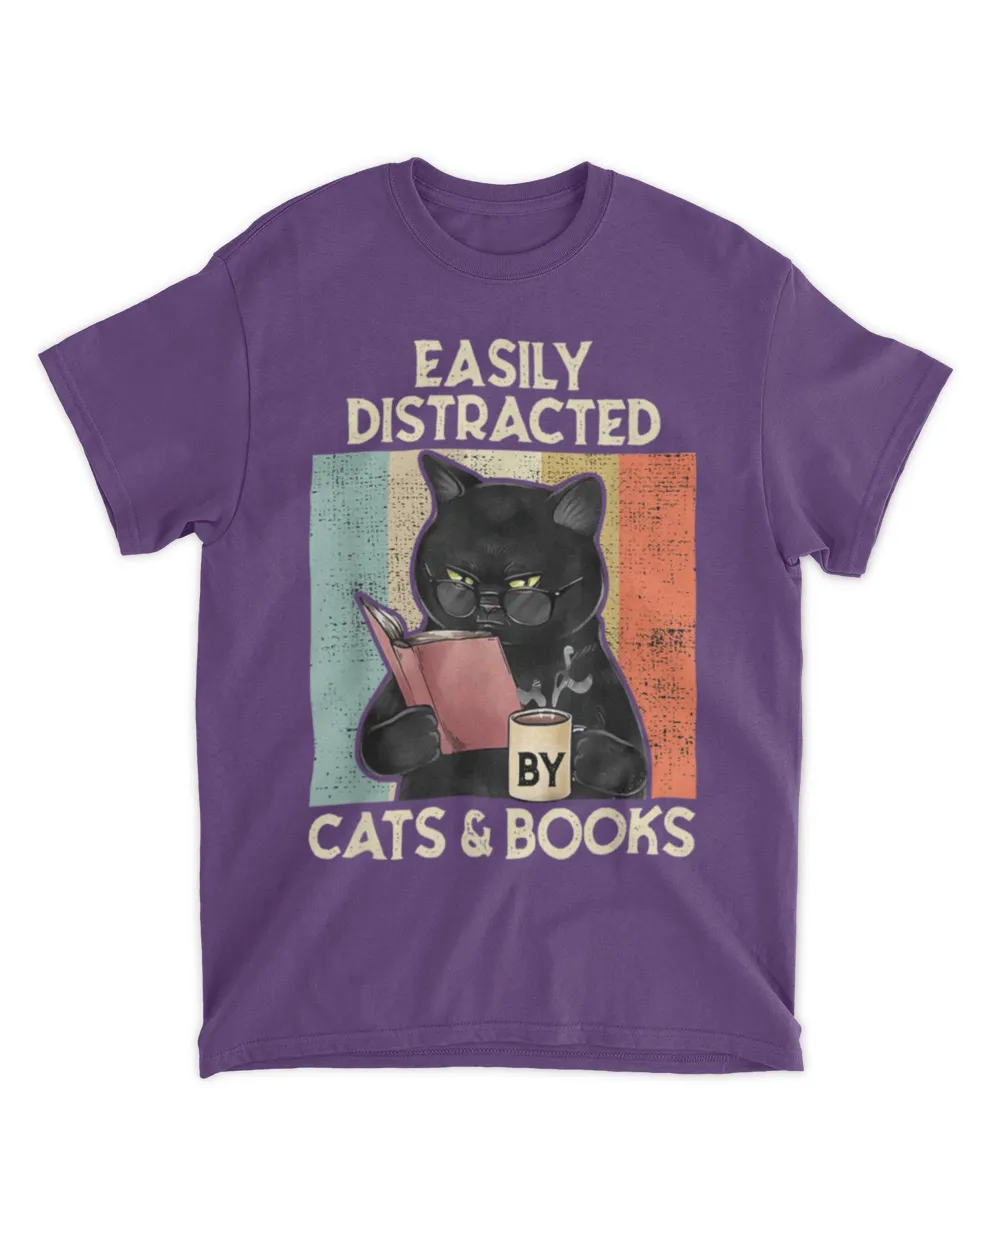 Books by cat books